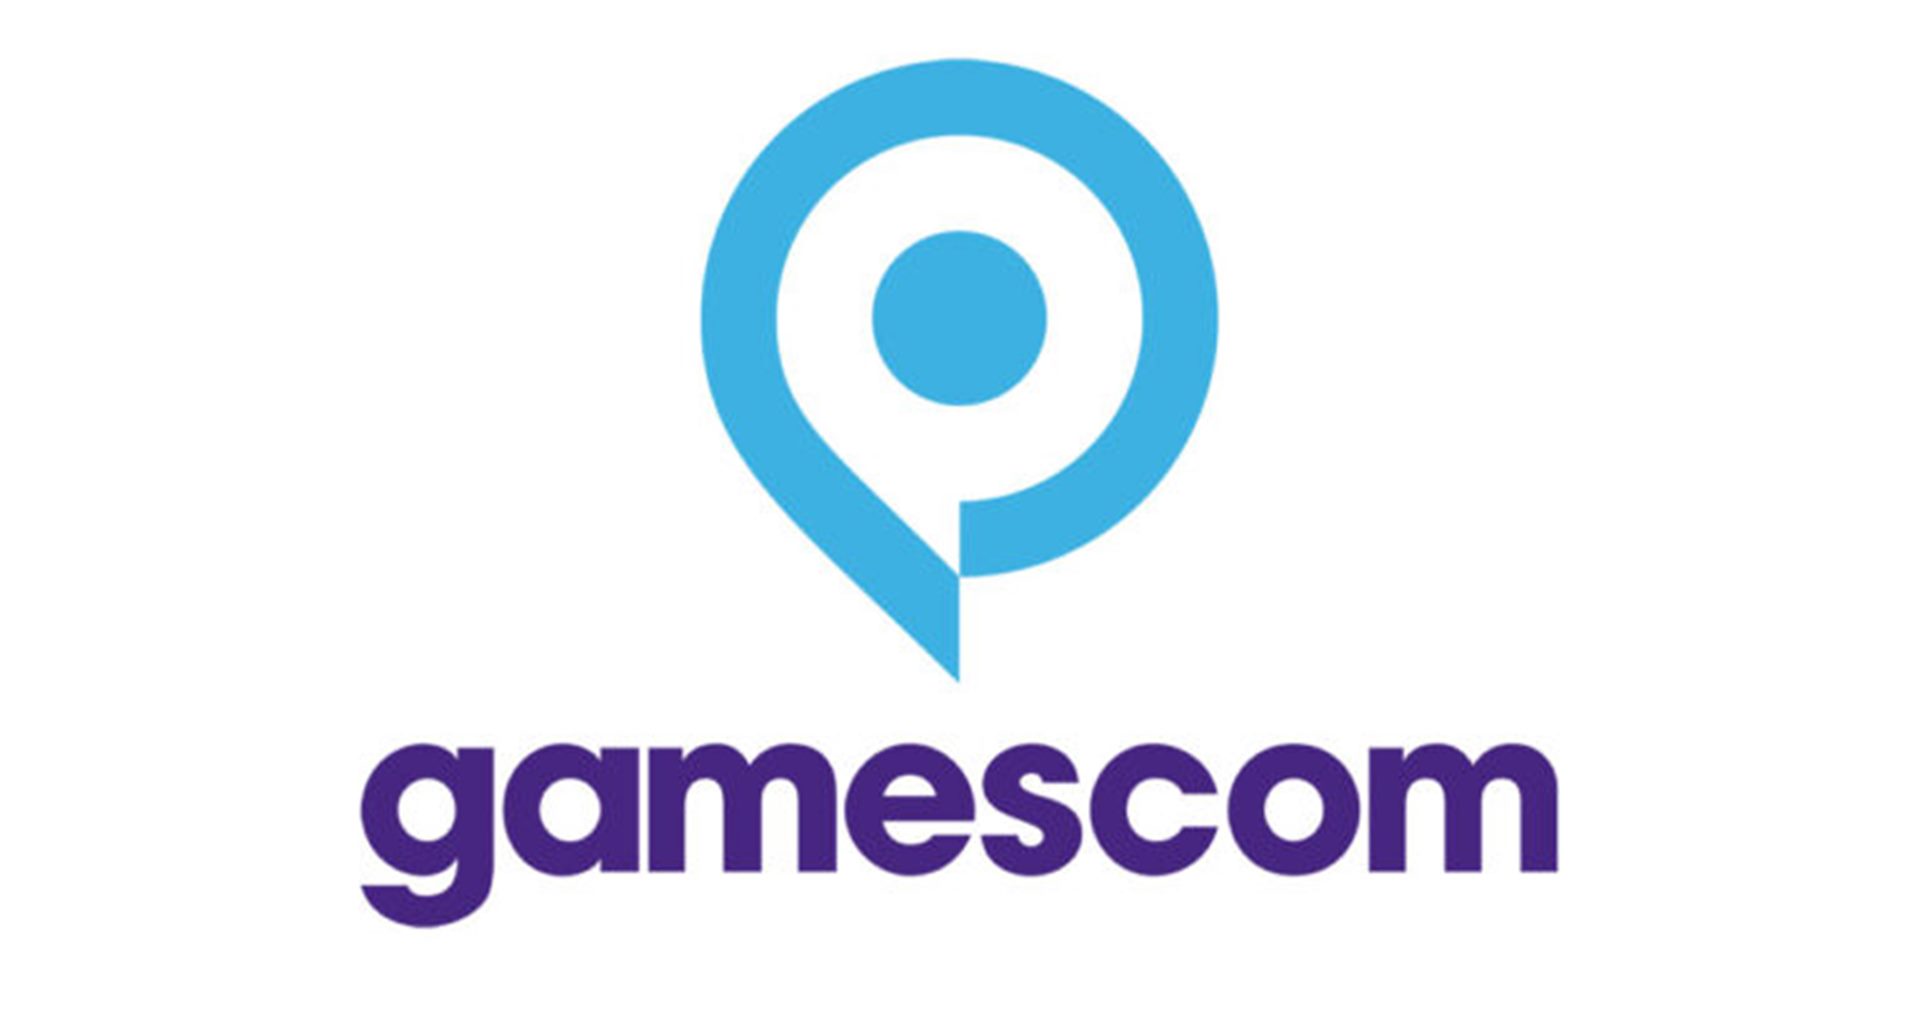 งาน Gamescom 2022 จะจัดแบบลูกผสมในเดือน สิงหาคม นี้